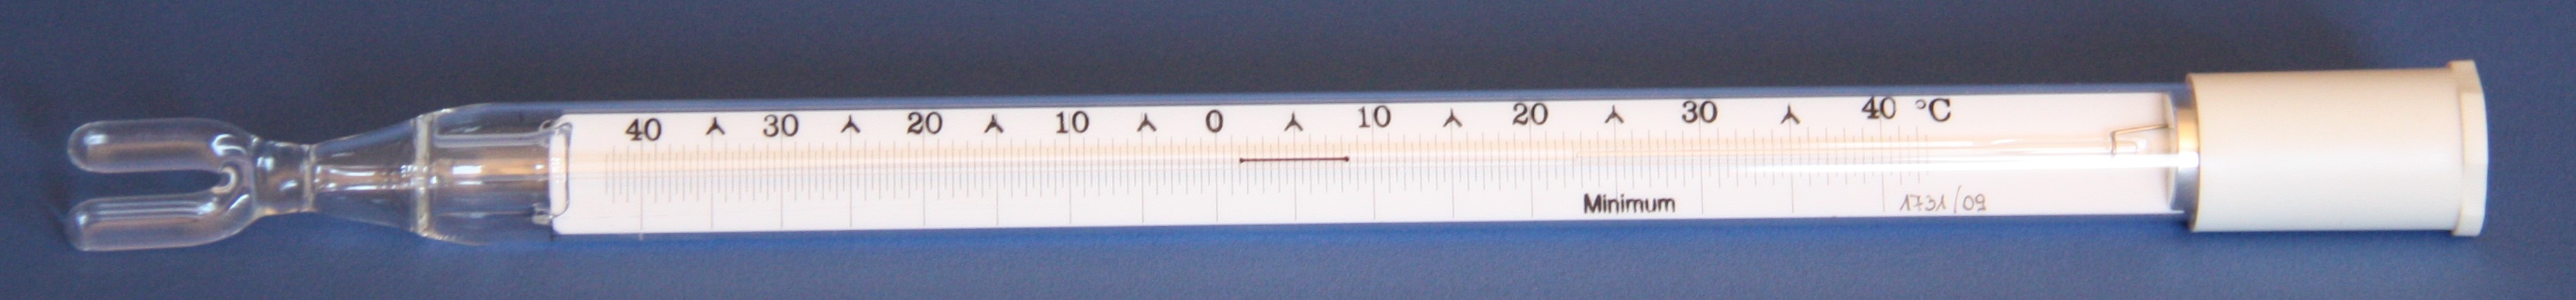 MIN-40+40 Minimum Thermometer